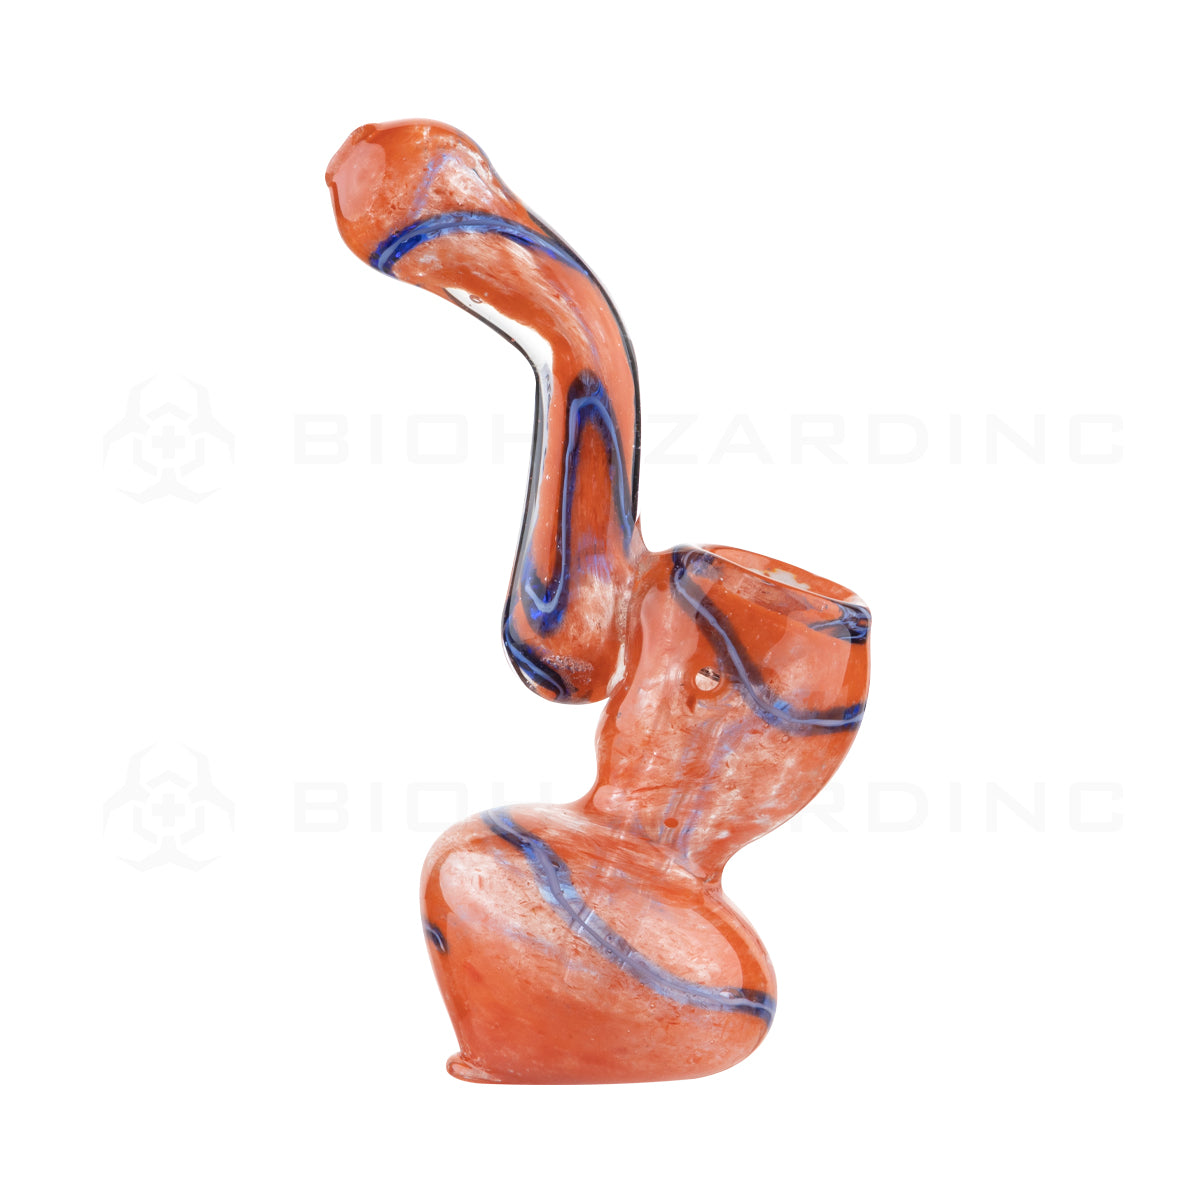 Bubbler | Frit Dichroic Bubbler | 4" - Assorted Colors Glass Bubbler Biohazard Inc   